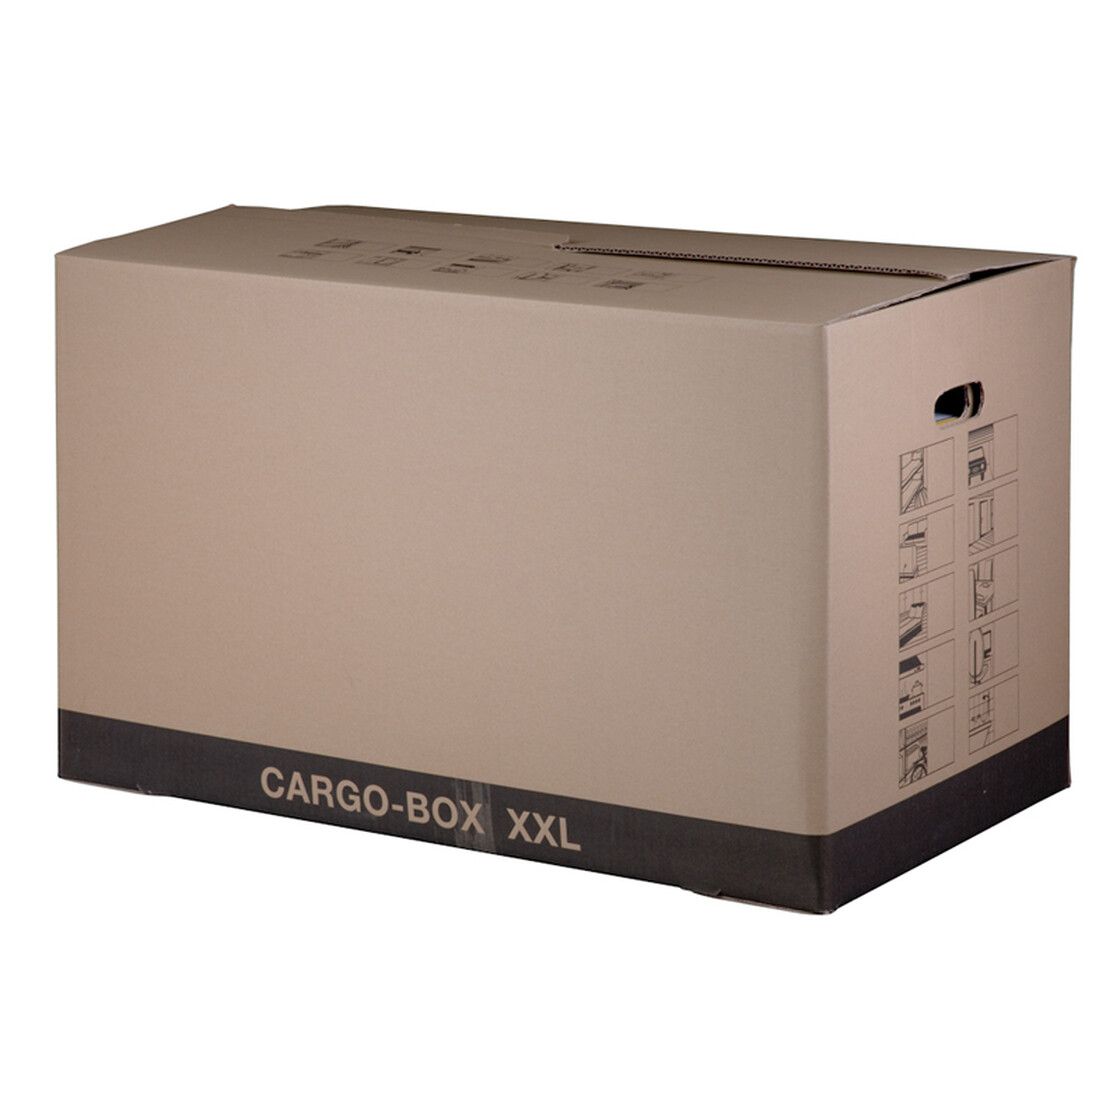 750x420x440 mm CARGO-BOX - XXL - ECO 2-wellig -  - B, 3,64  €